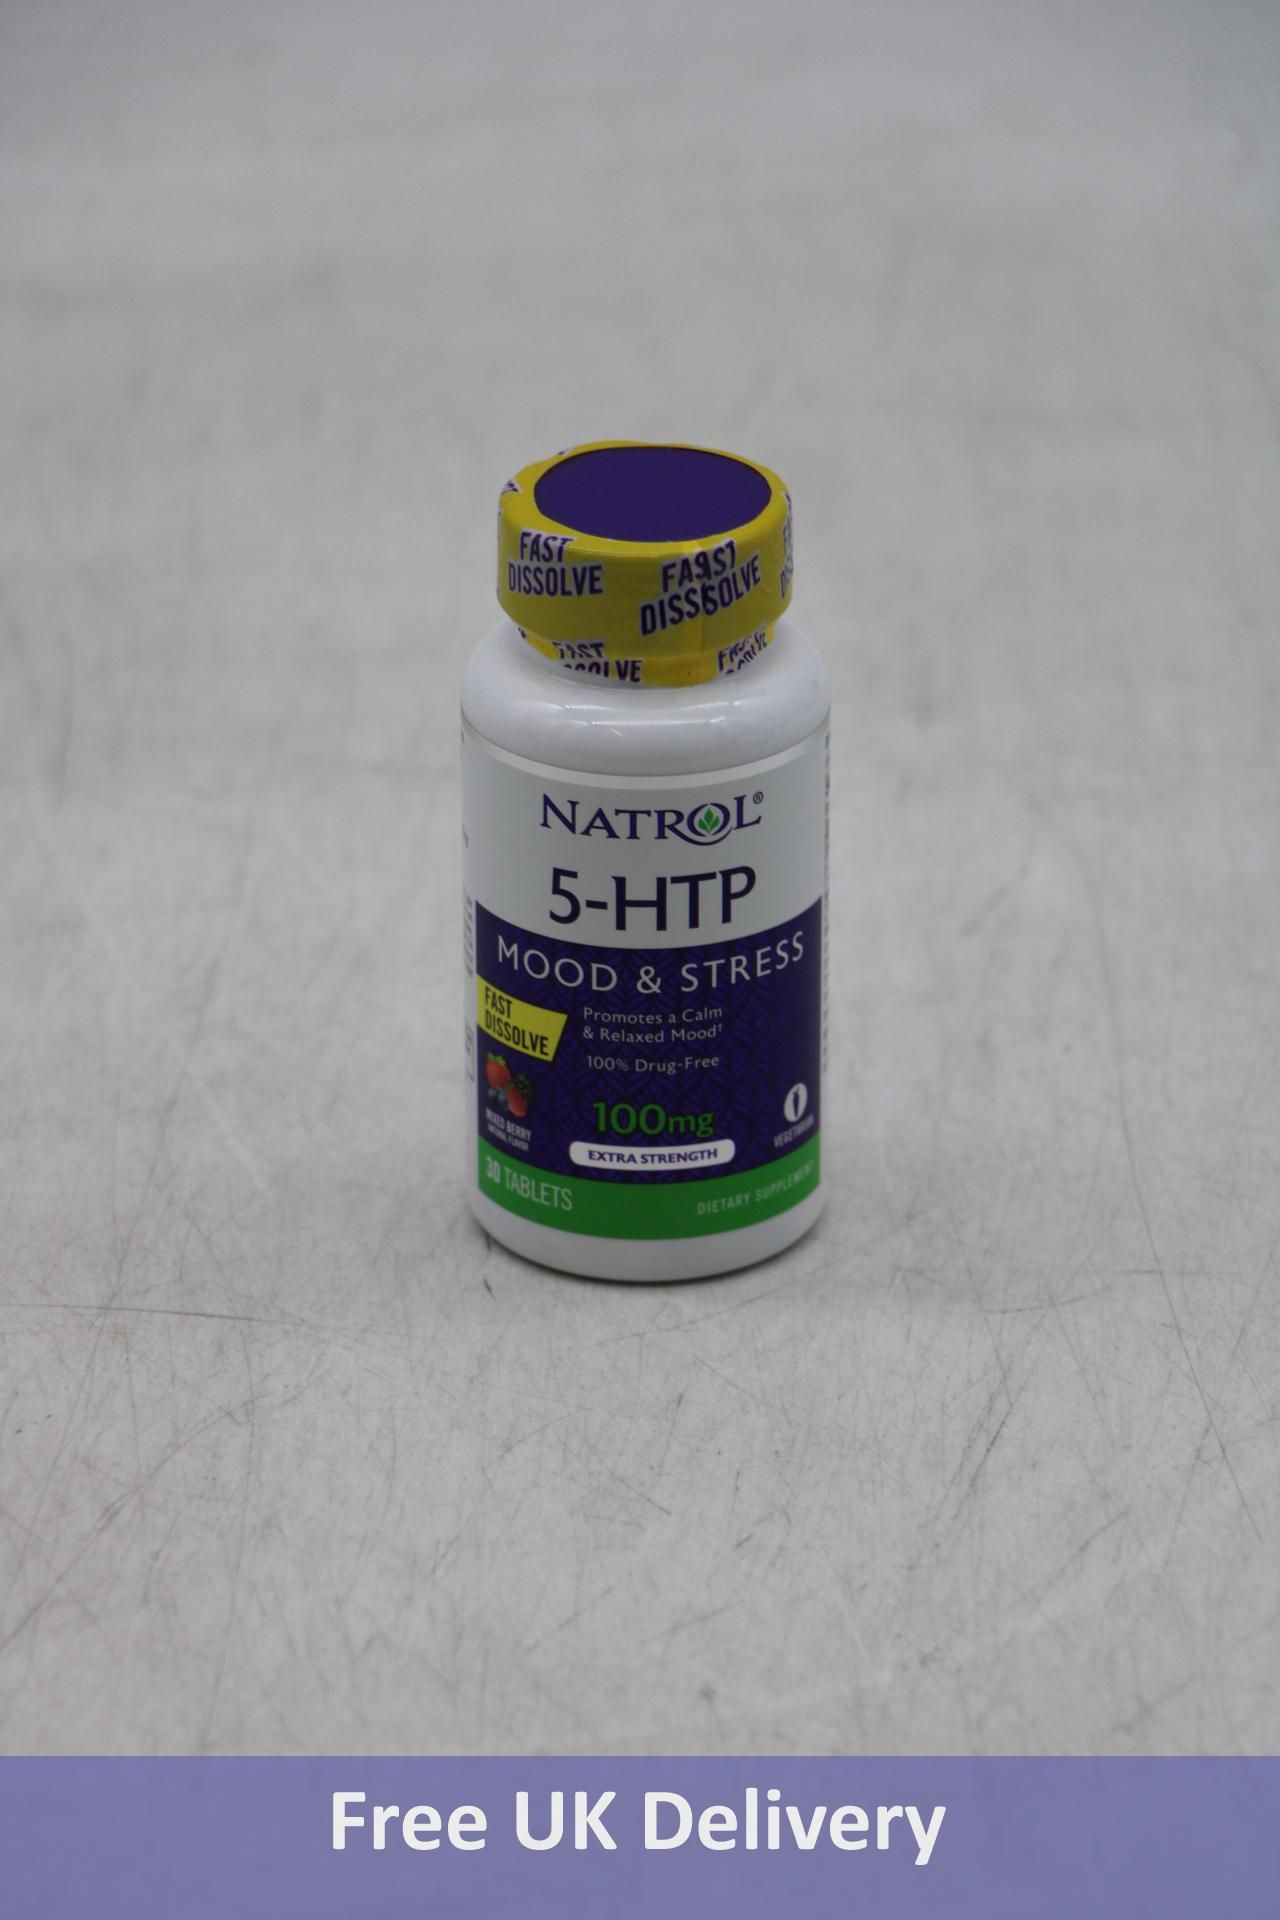 Six Pots of Natrol 5-HTP Mood & Stress Dietary Supplement, Mixed Berry, 100 mg, 30 Tablets Per Pot,